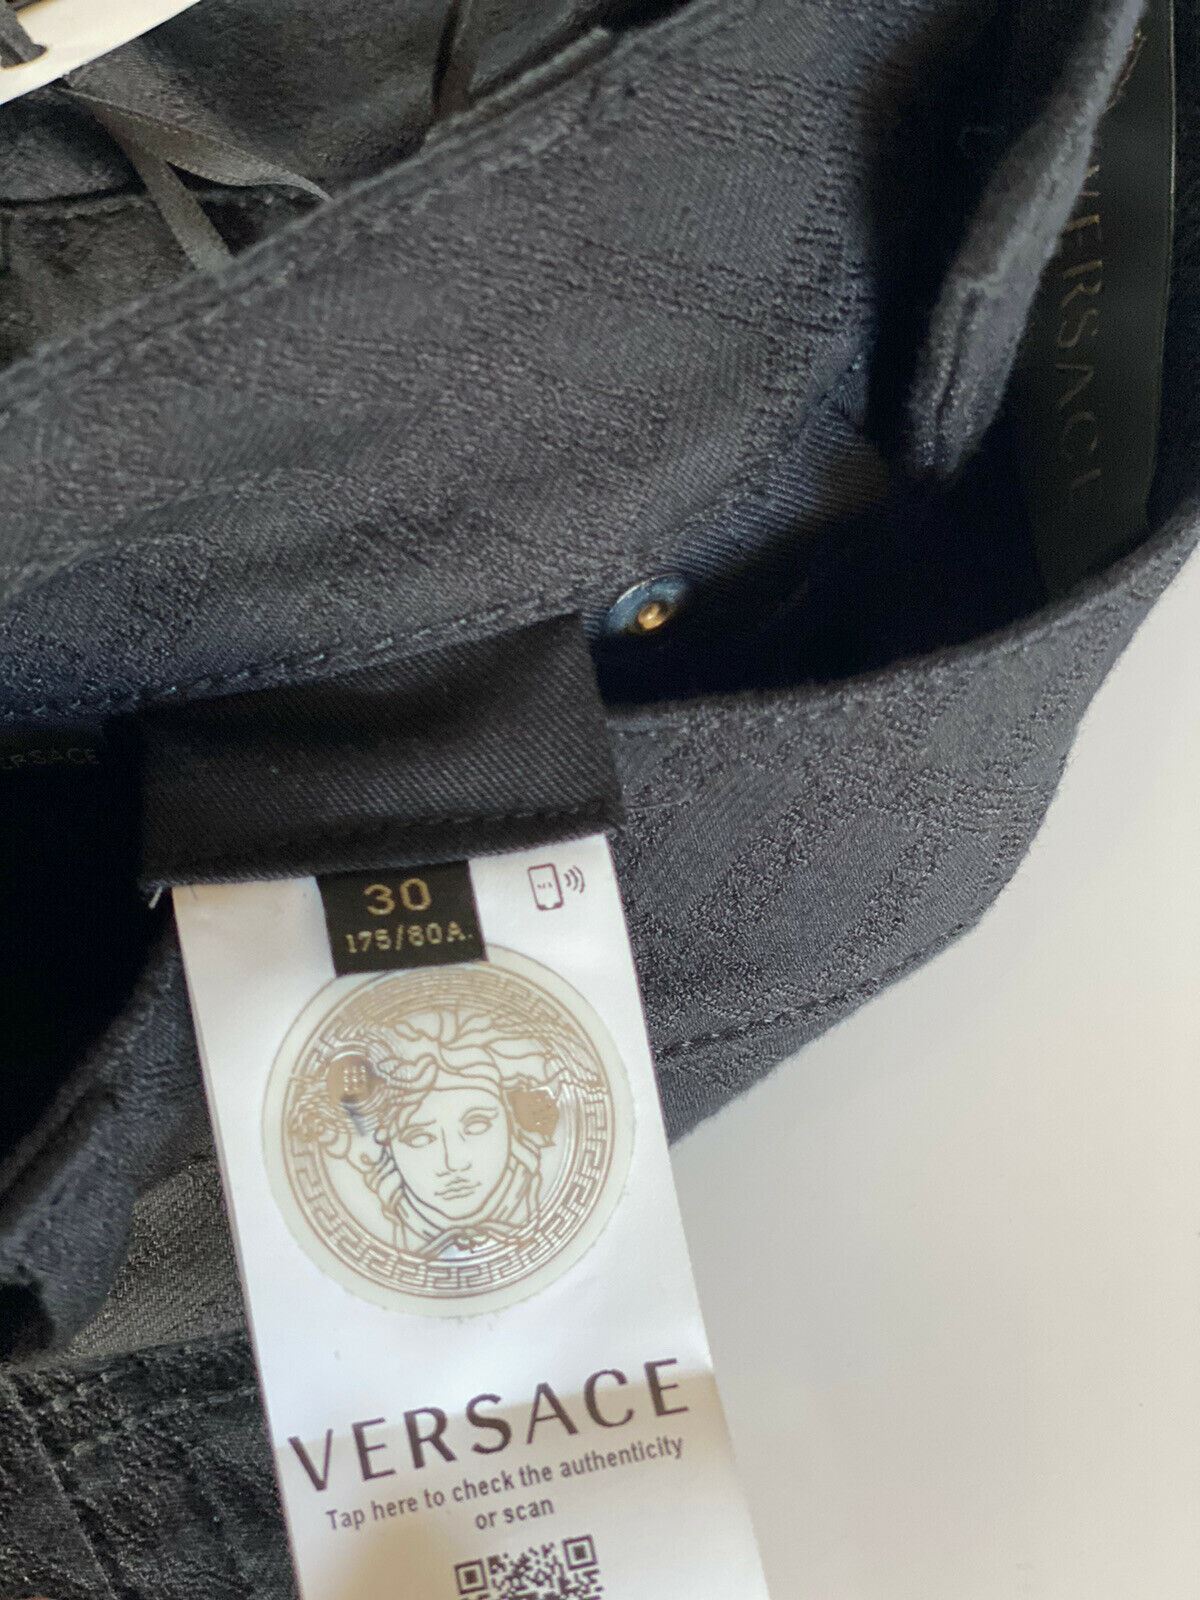 Neu mit Etikett: 695 $ Versace Herren-Denim-Jeans in Schwarz, Größe 30 US A81832, hergestellt in Italien